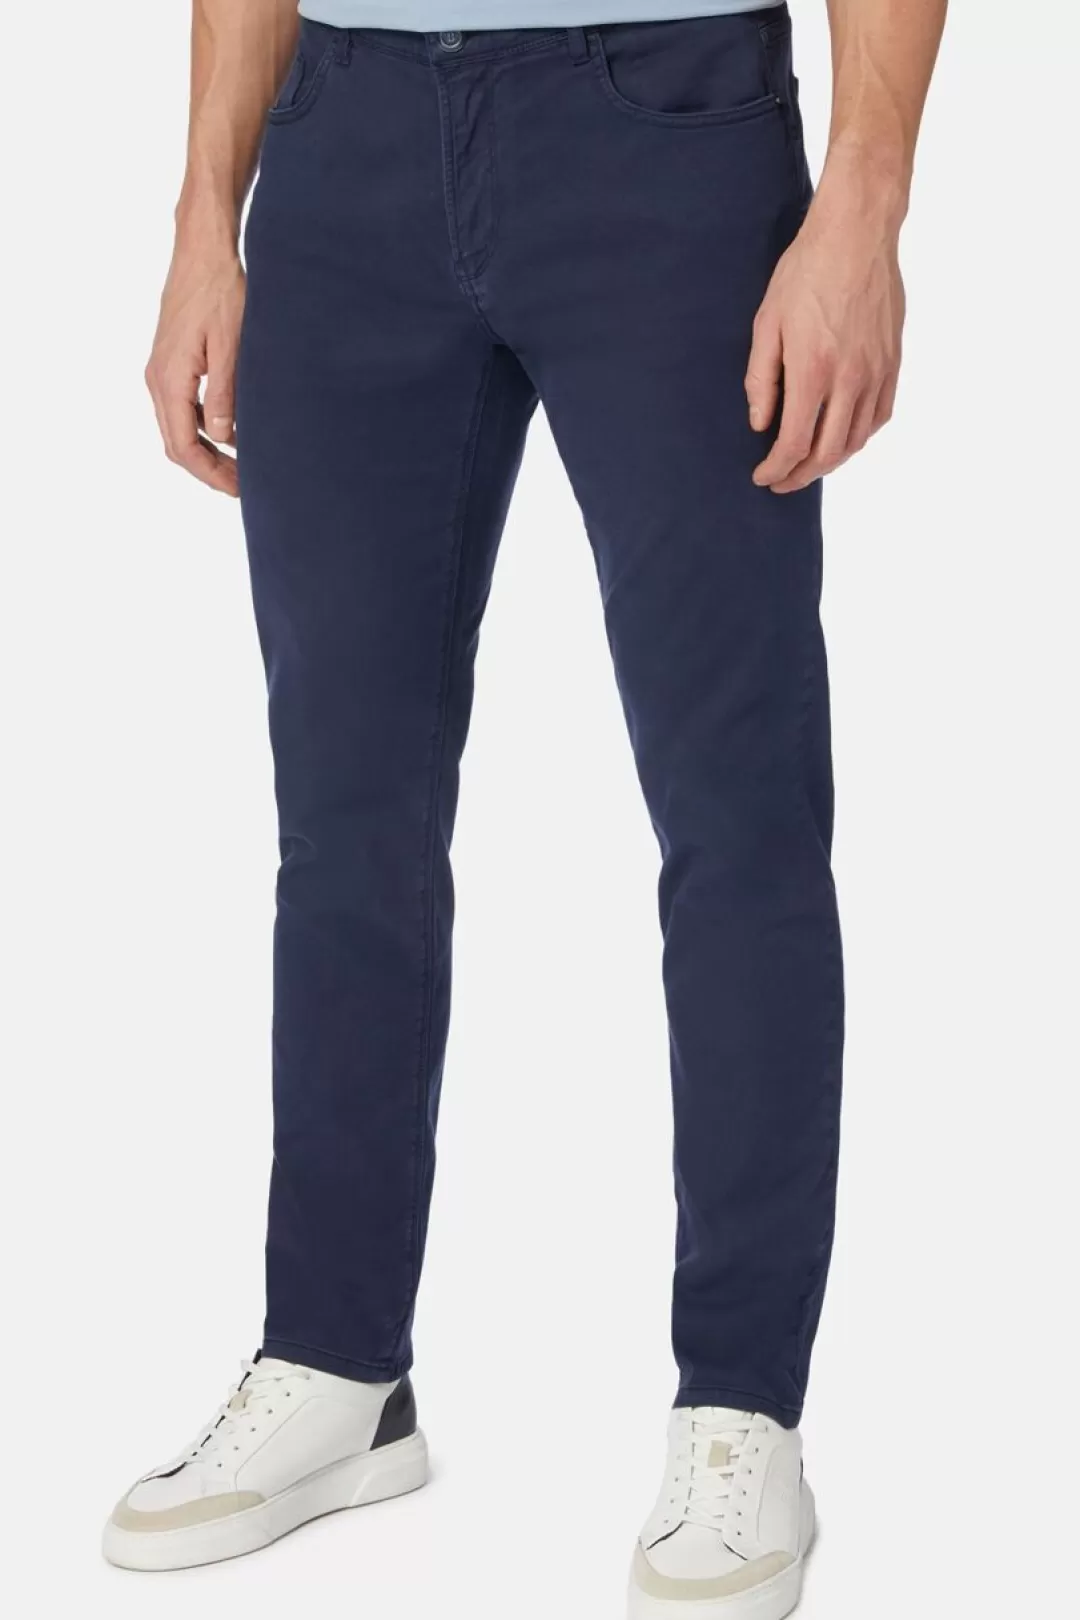 Boggi Jeans In Cotone Tencel Elasticizzato Blu Chiaro Hot